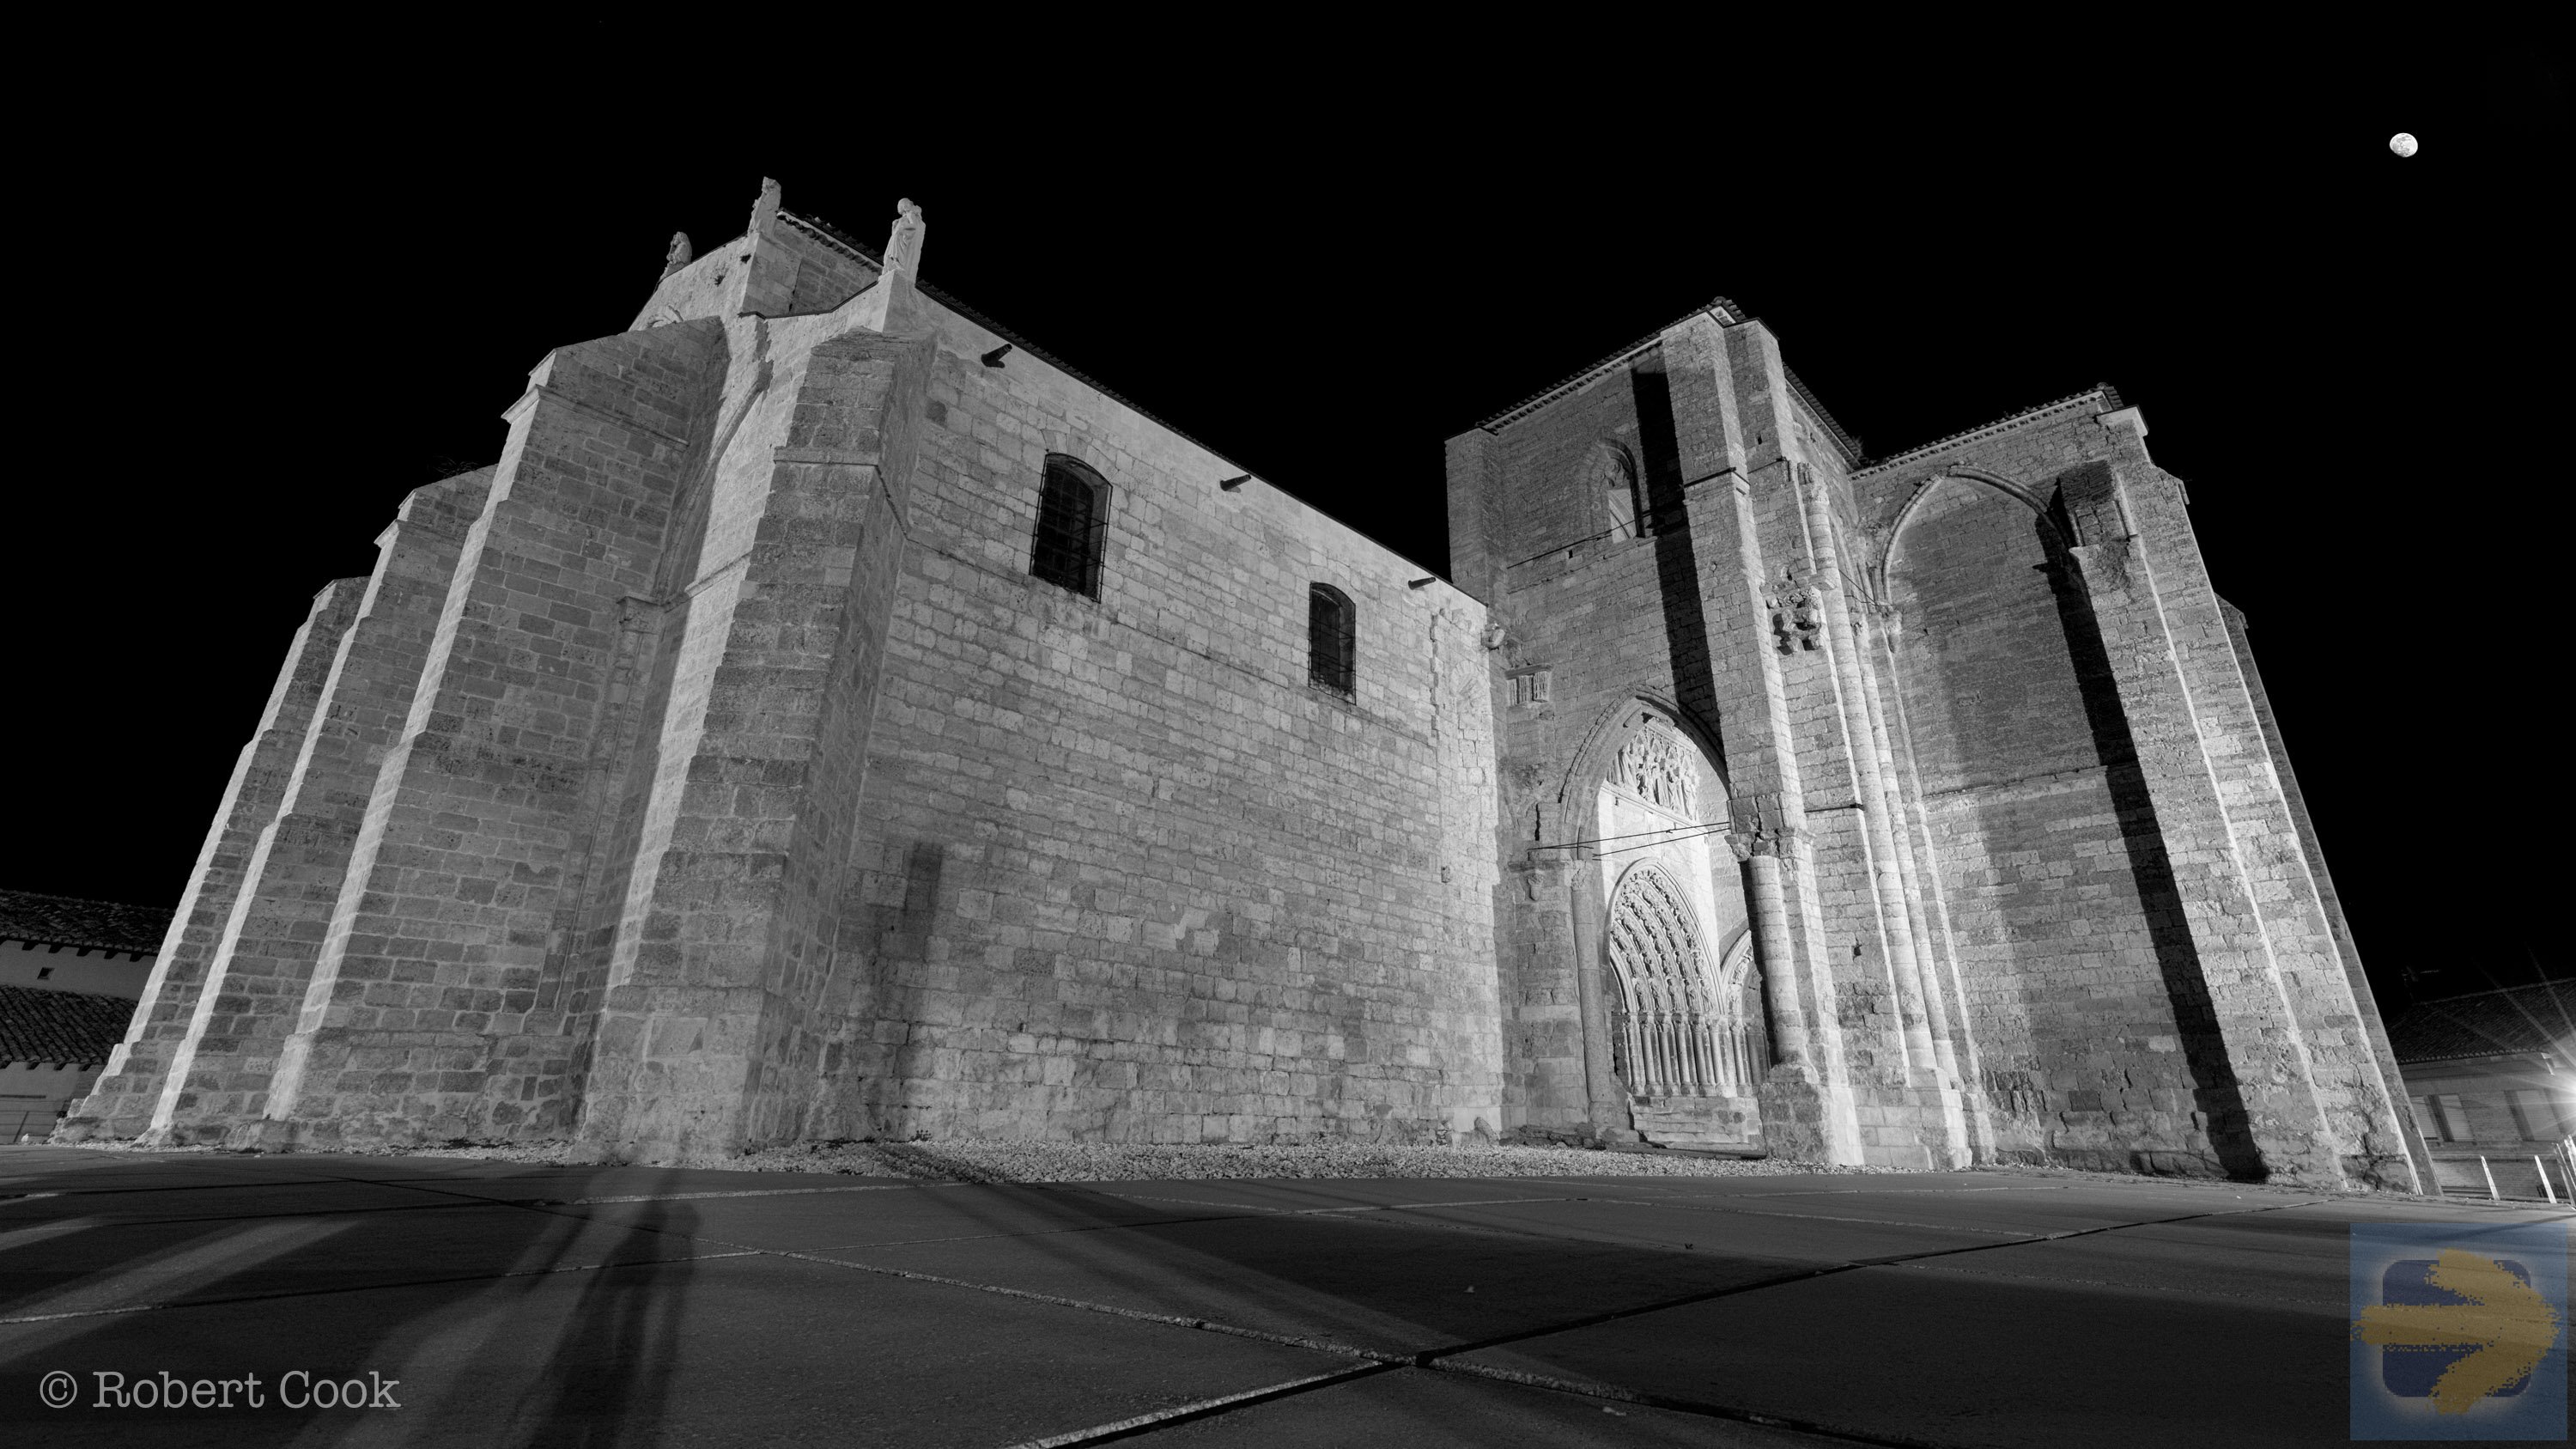 Iglesia de Santa María la Blanca at night